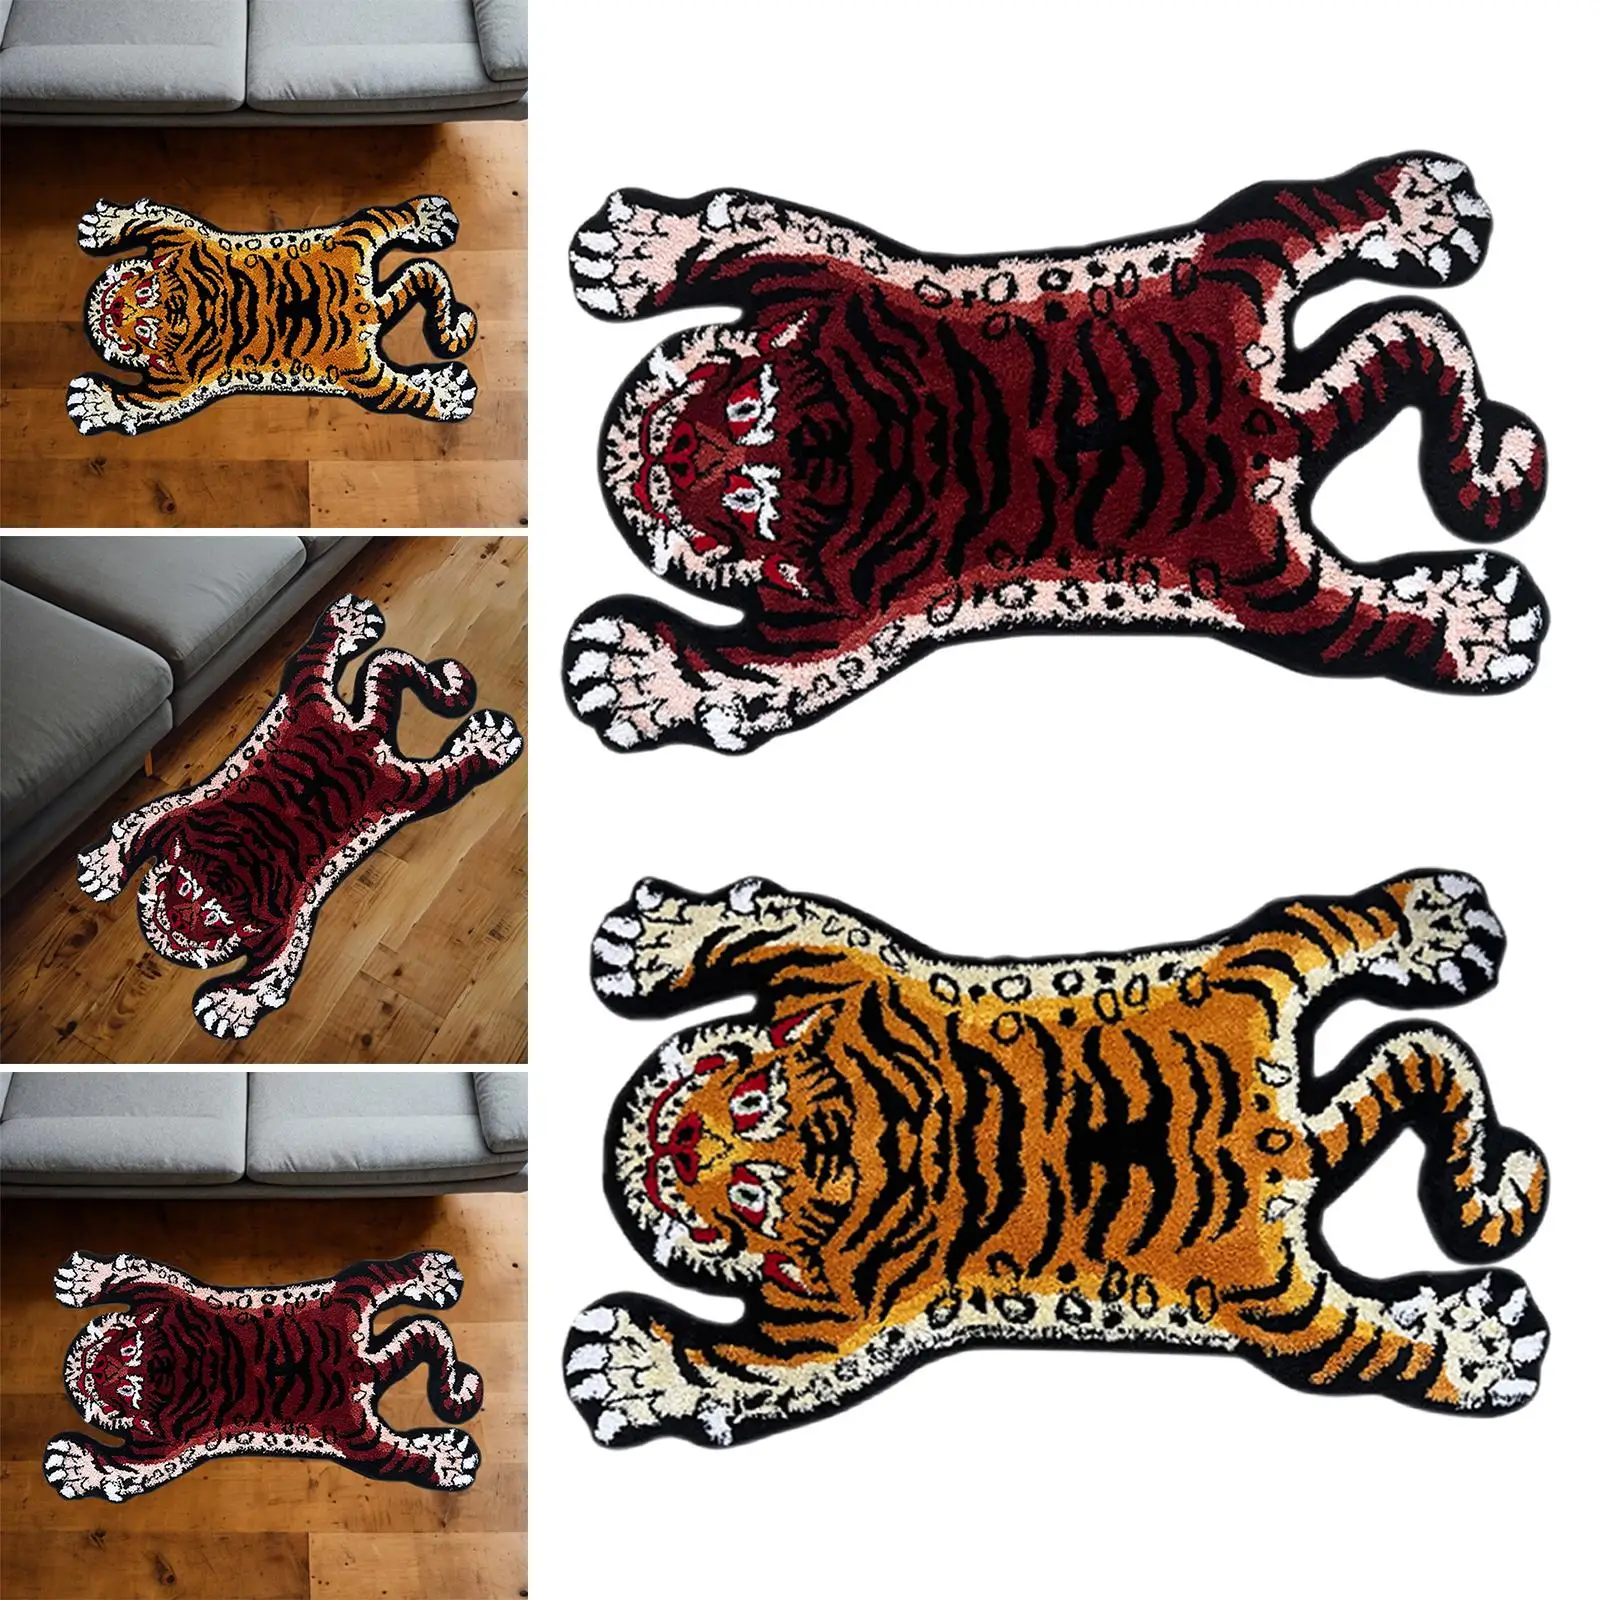 Tiger Rug Nonslip Tufted Soft Area Rug Animal Shaped Rug Tiger Carpet for Kid`s Room Bathtub Kitchen Bathroom Living Room